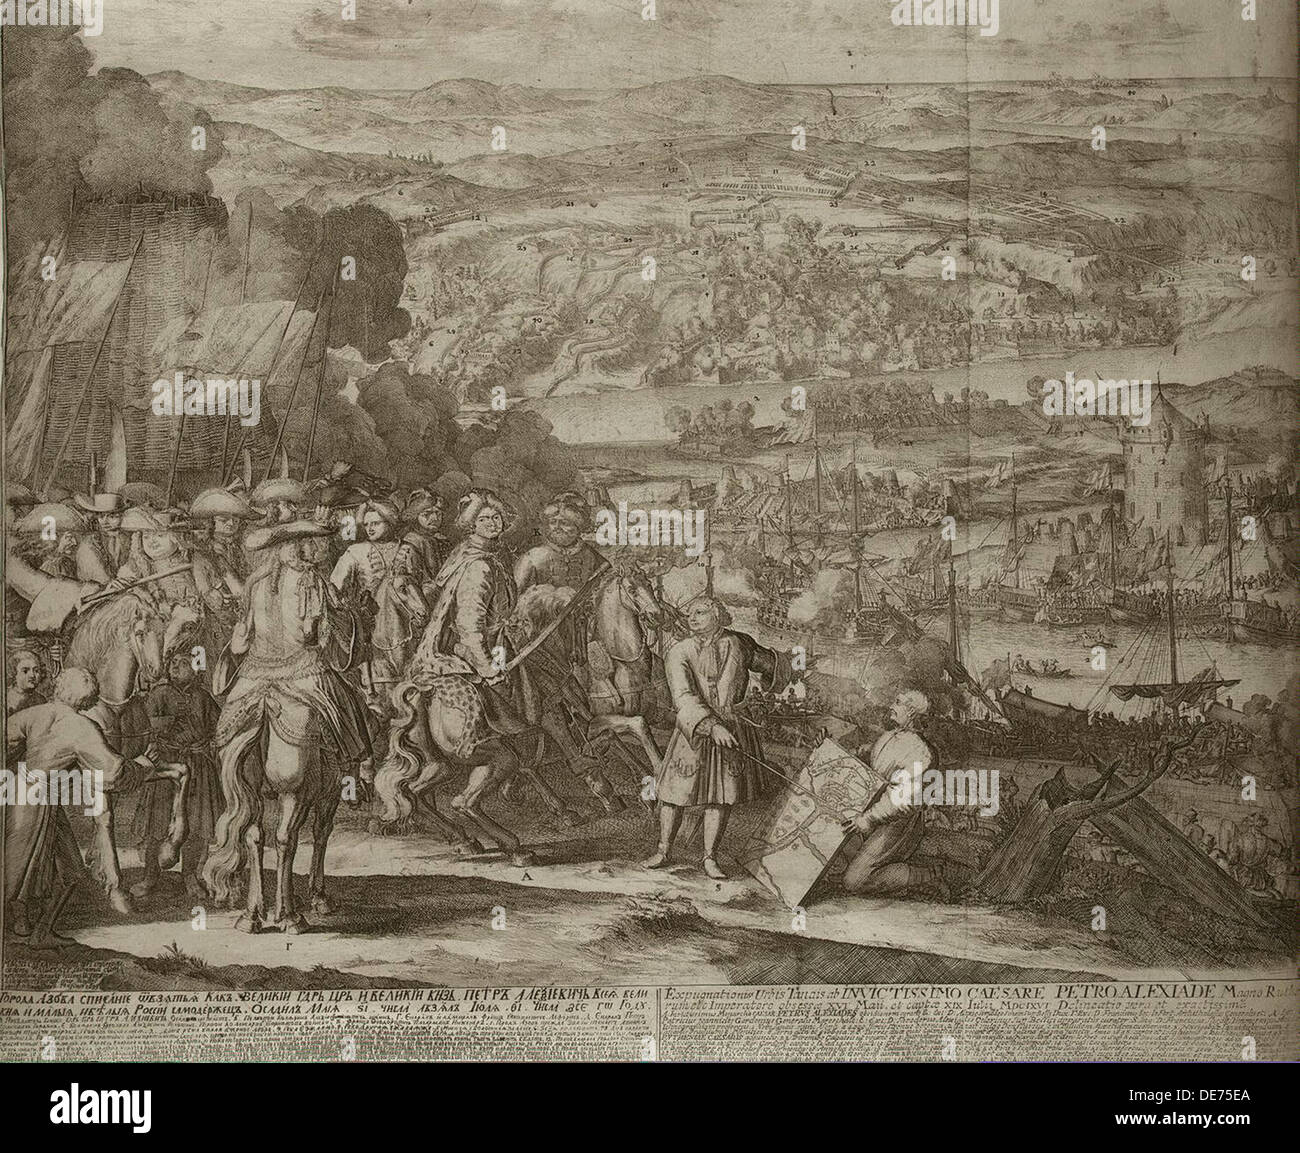 Belagerung der türkischen Festung Asow durch russische Truppen im Jahre 1696, um 1700. Künstler: Schoonebeek (Schoonebeck), Adriaan (1661-1705) Stockfoto